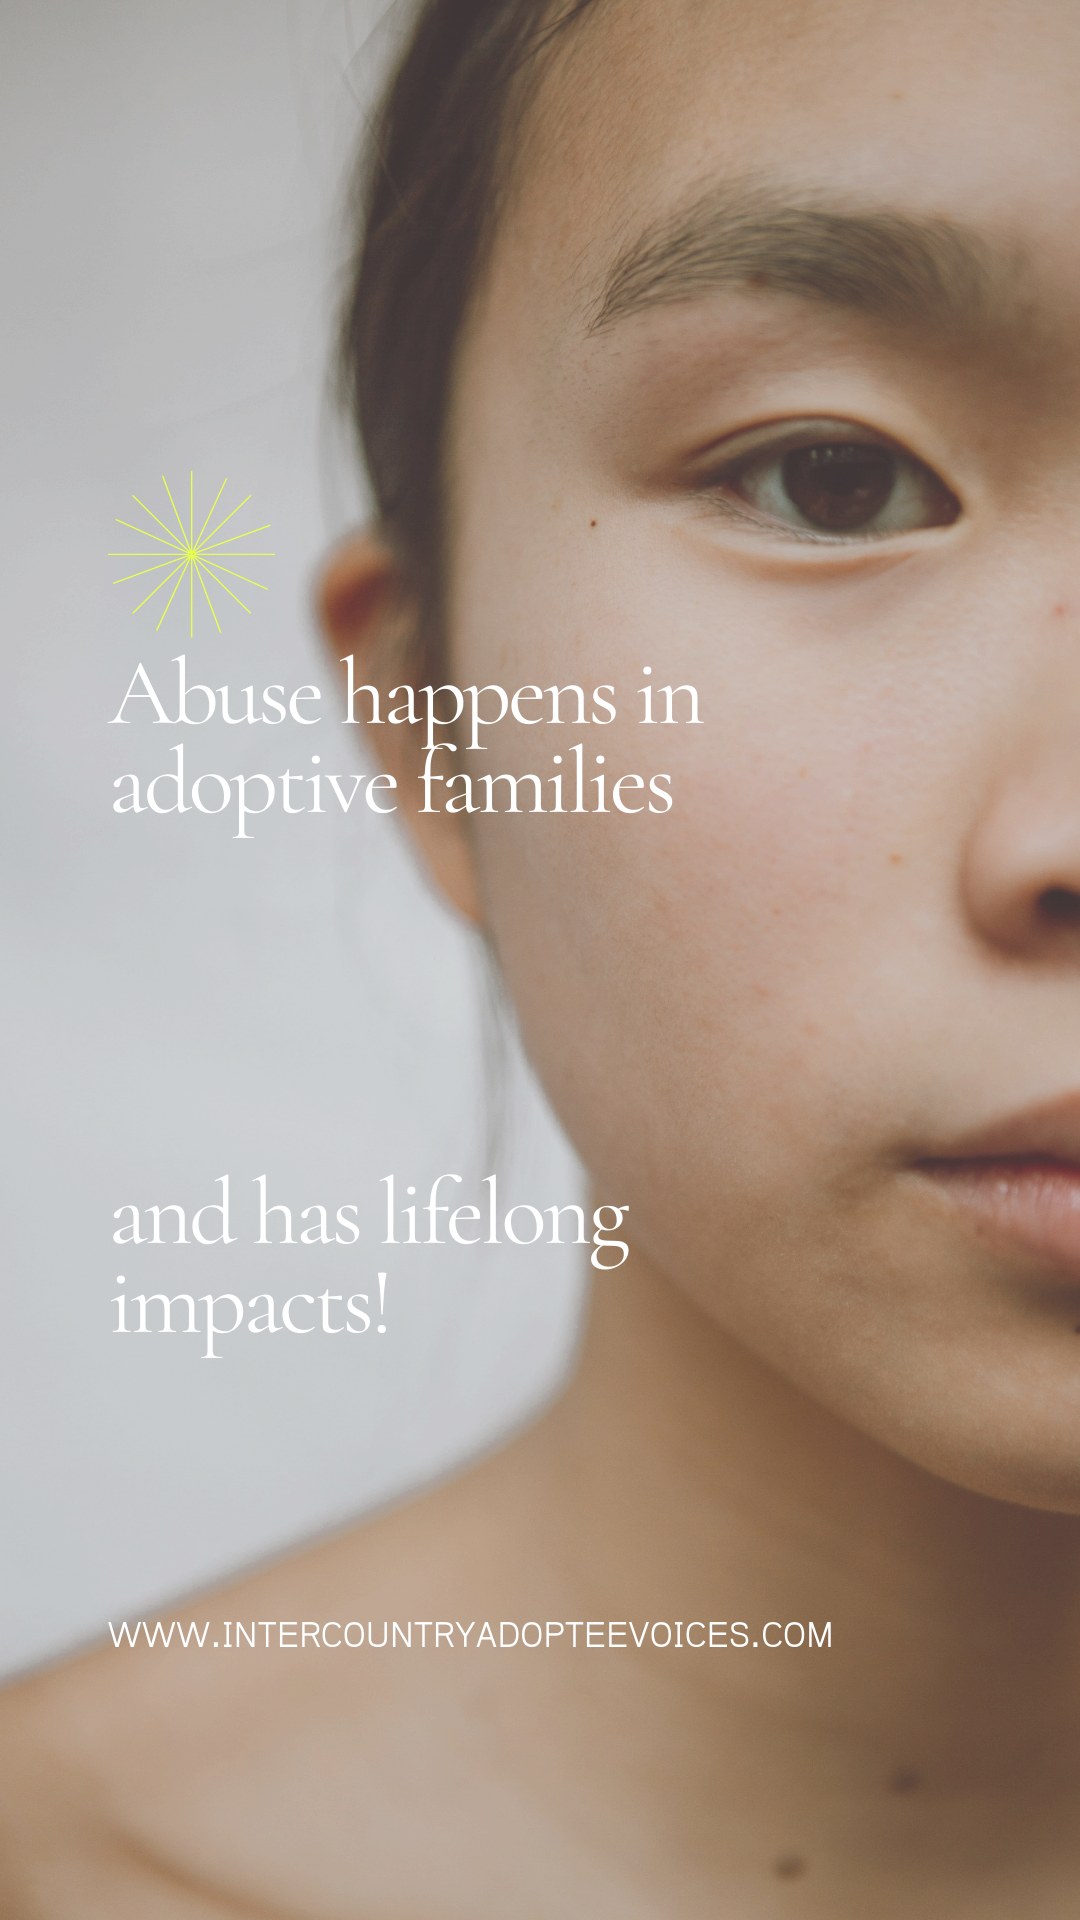 El legado y los impactos del abuso en la adopción